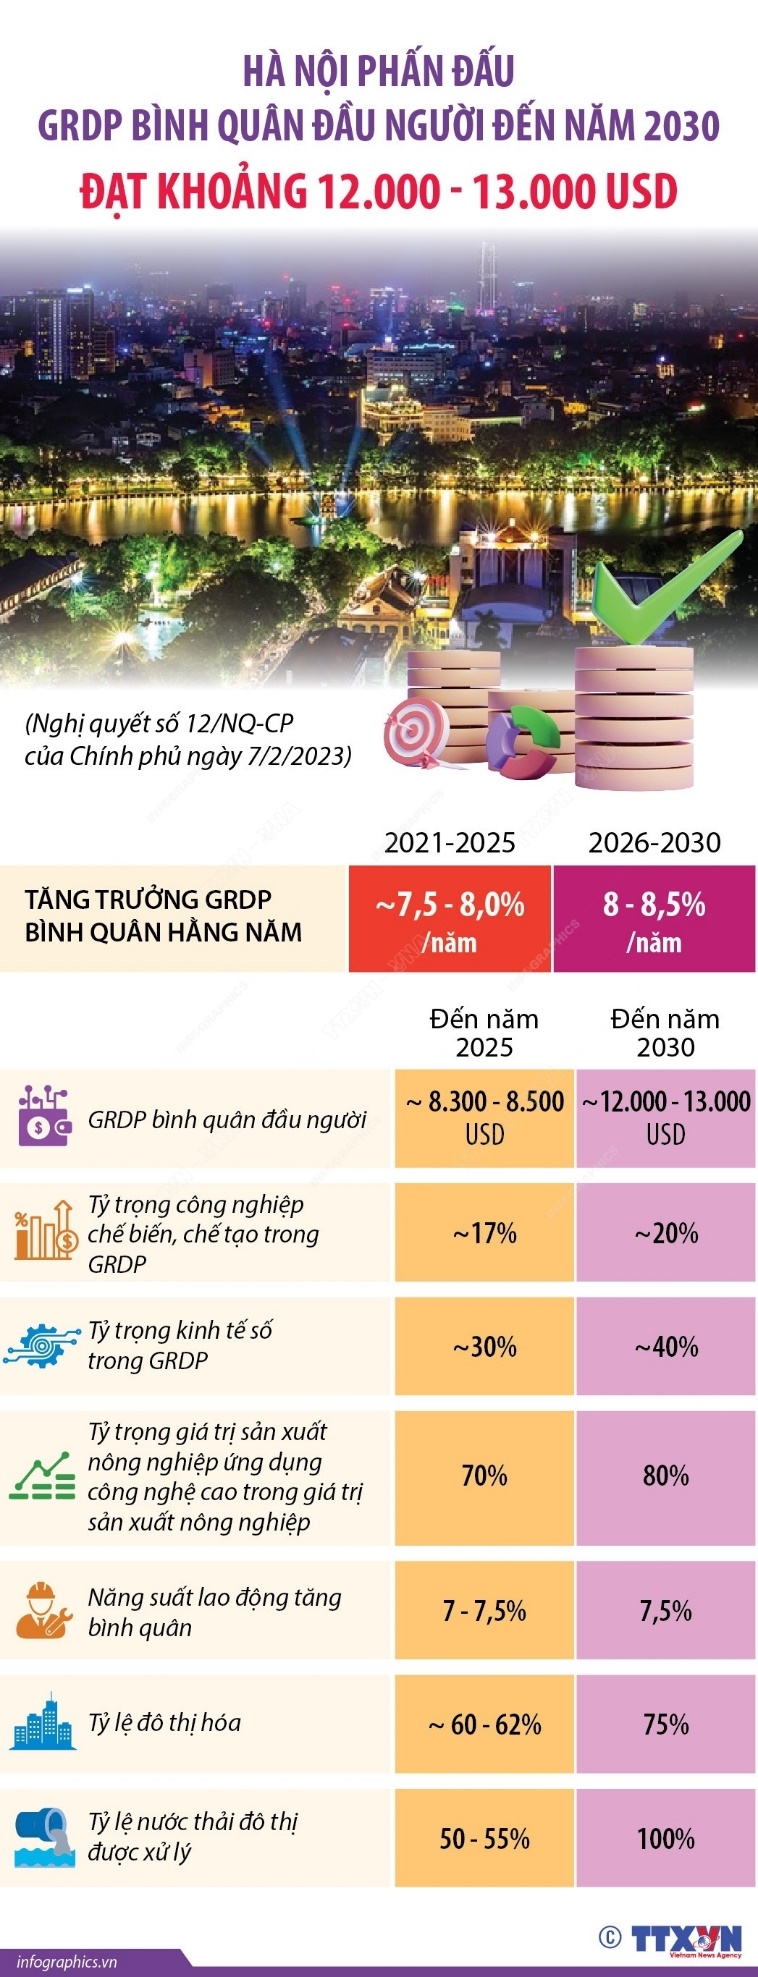 Hà Nội phấn đấu GRDP bình quân đầu người đến năm 2030 đạt 12.000 - 13.000 USD